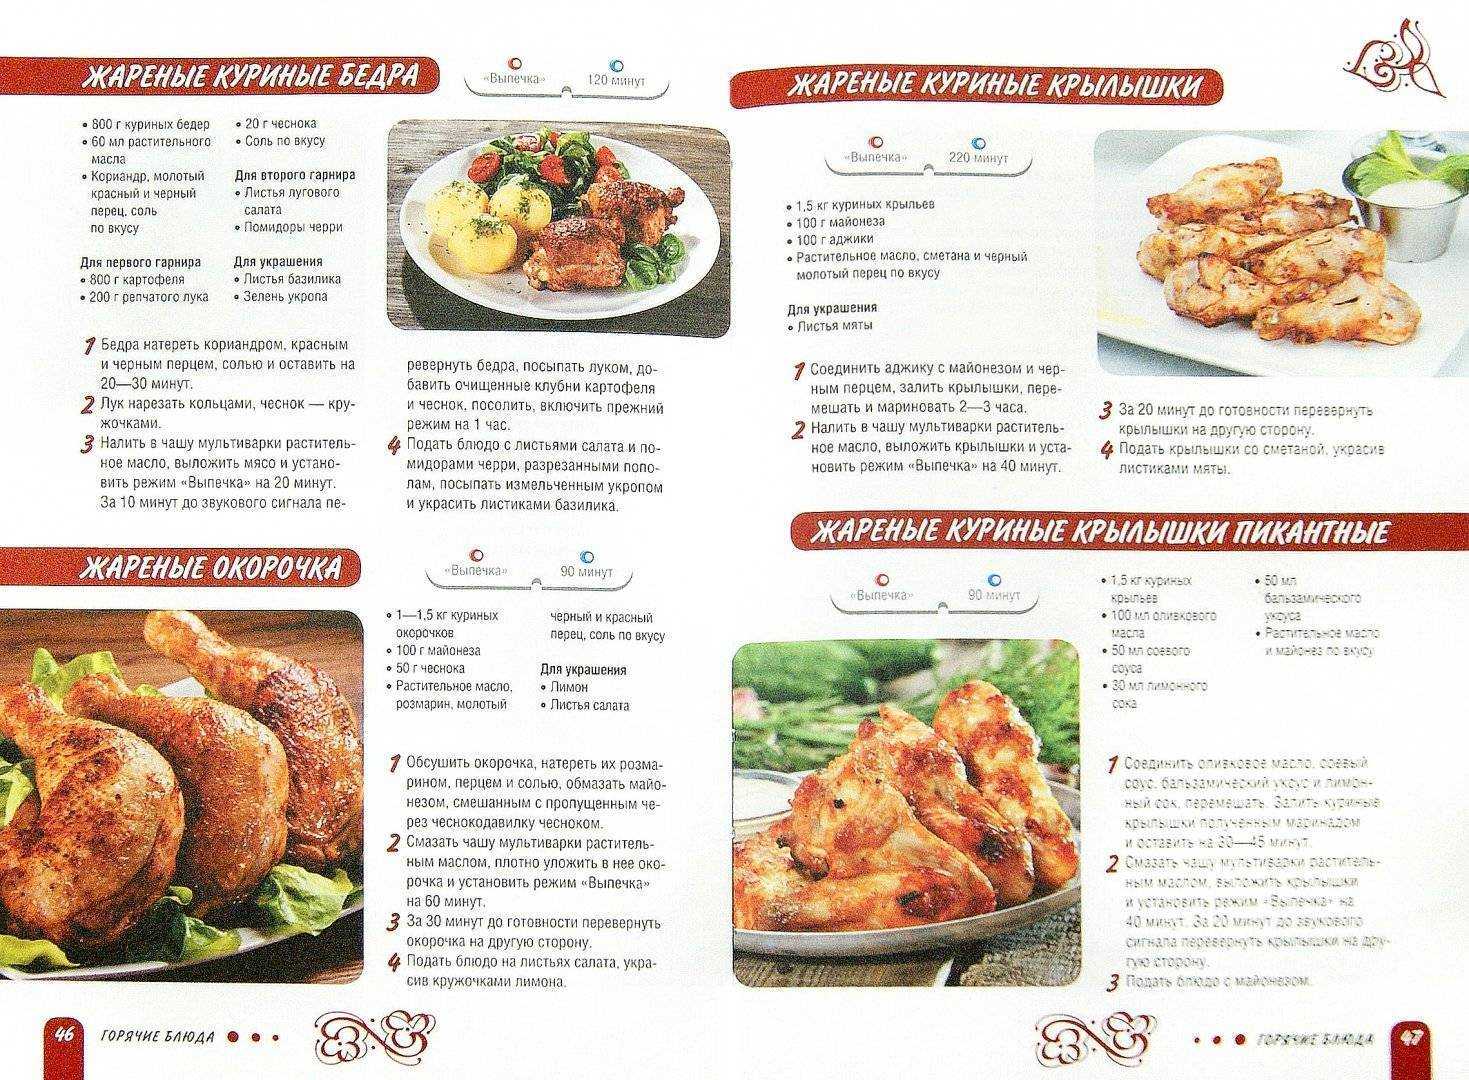 Напечатанные рецепты. Рецепты вторых блюд с описанием. Рецепты горячих блюд с описанием. Картинки рецепты блюд. Рецепты блюд в картинках с описанием.